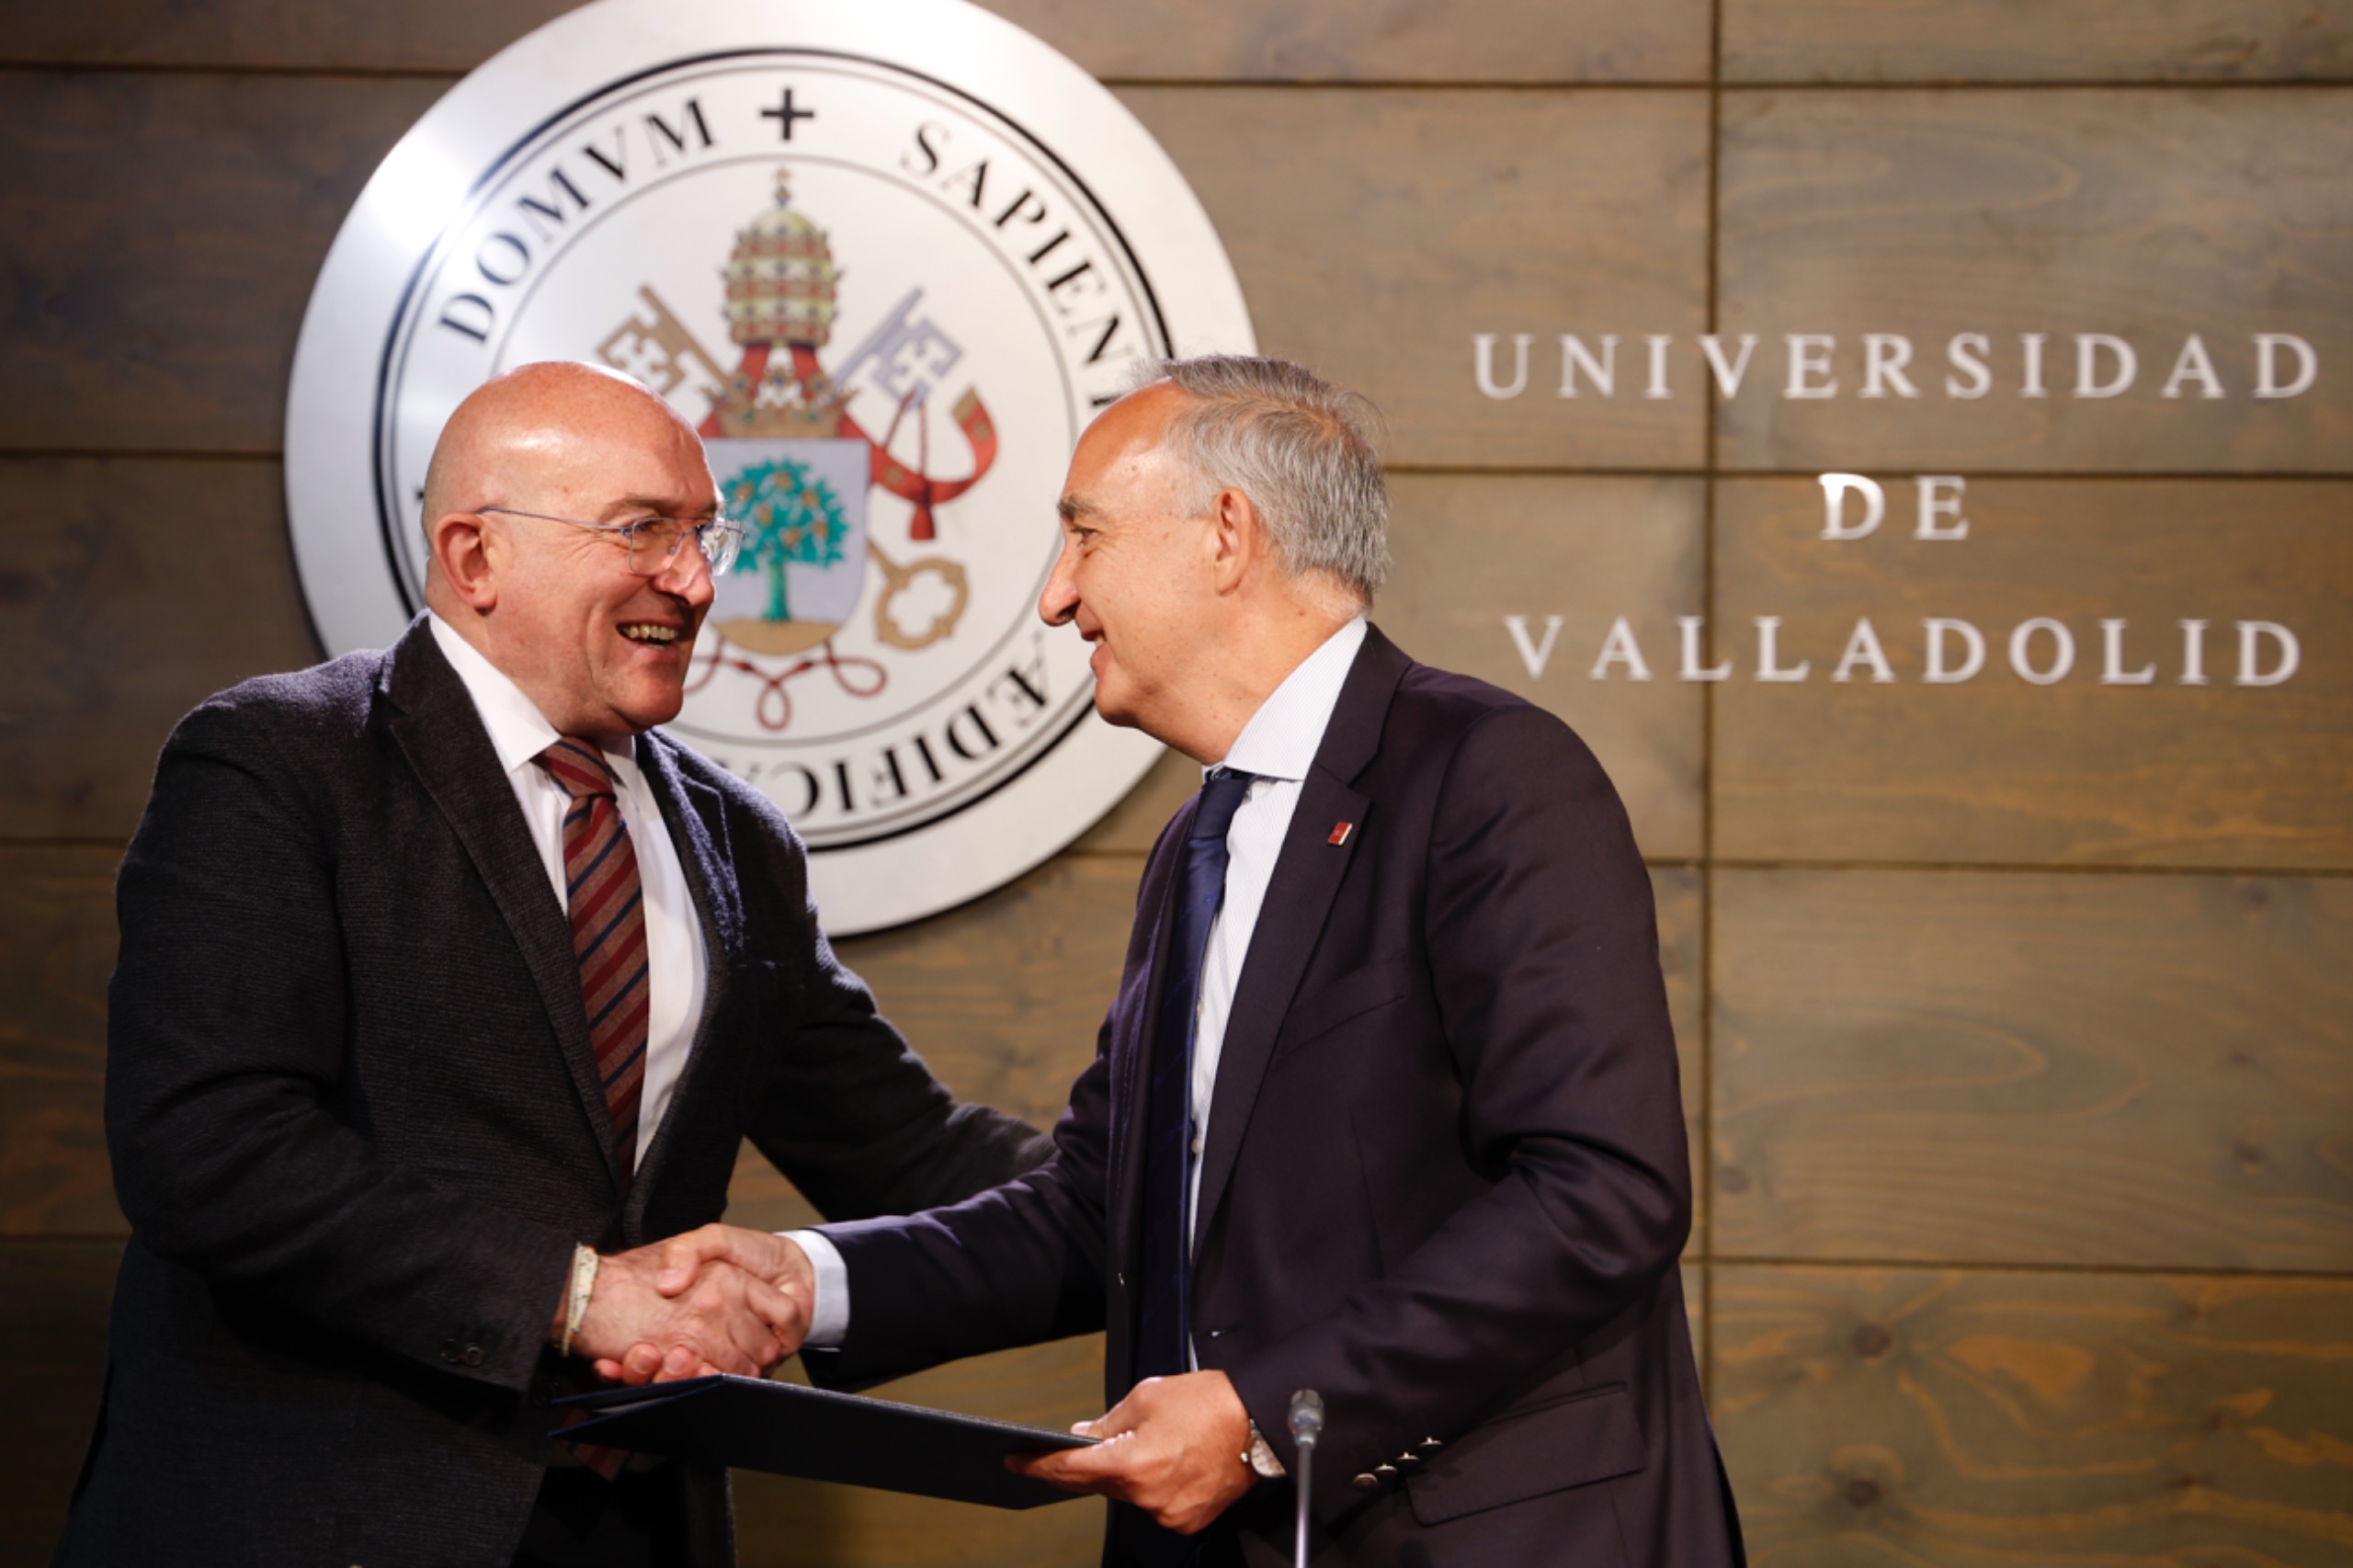 El alcalde de Valladolid, Jesús Julio Carnero, y el rector de la Universidad de Valladolid, Antonio Largo, firma el acuerdo de impulso del Centro de IA de la UVA.